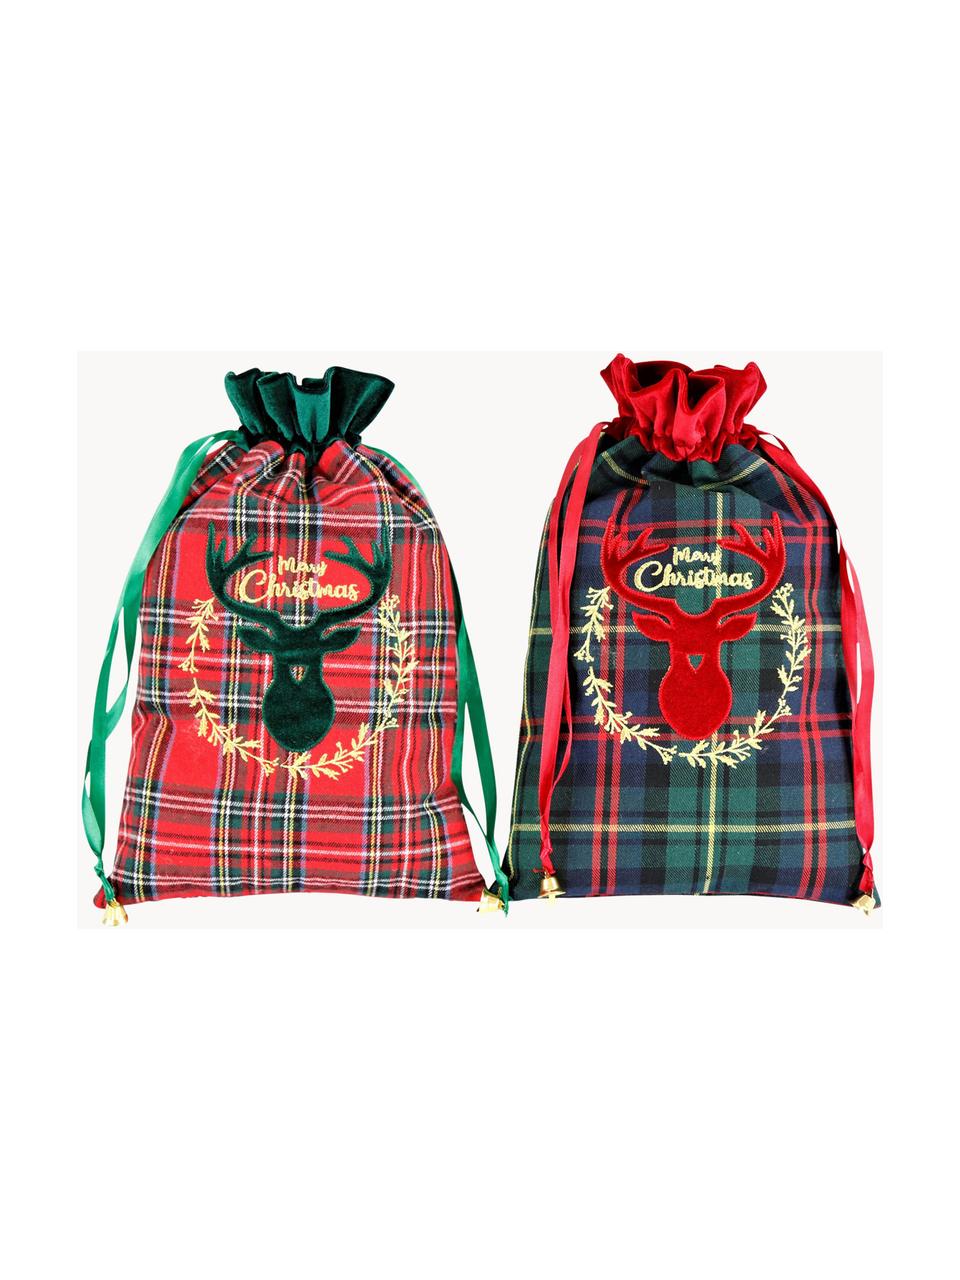 Súprava dekorácií Merry Christmas, V 35 cm, 2 diely, Polyester, bavlna, Zelená, červená, čierna, kockovaná, Š 22 x D 35 cm